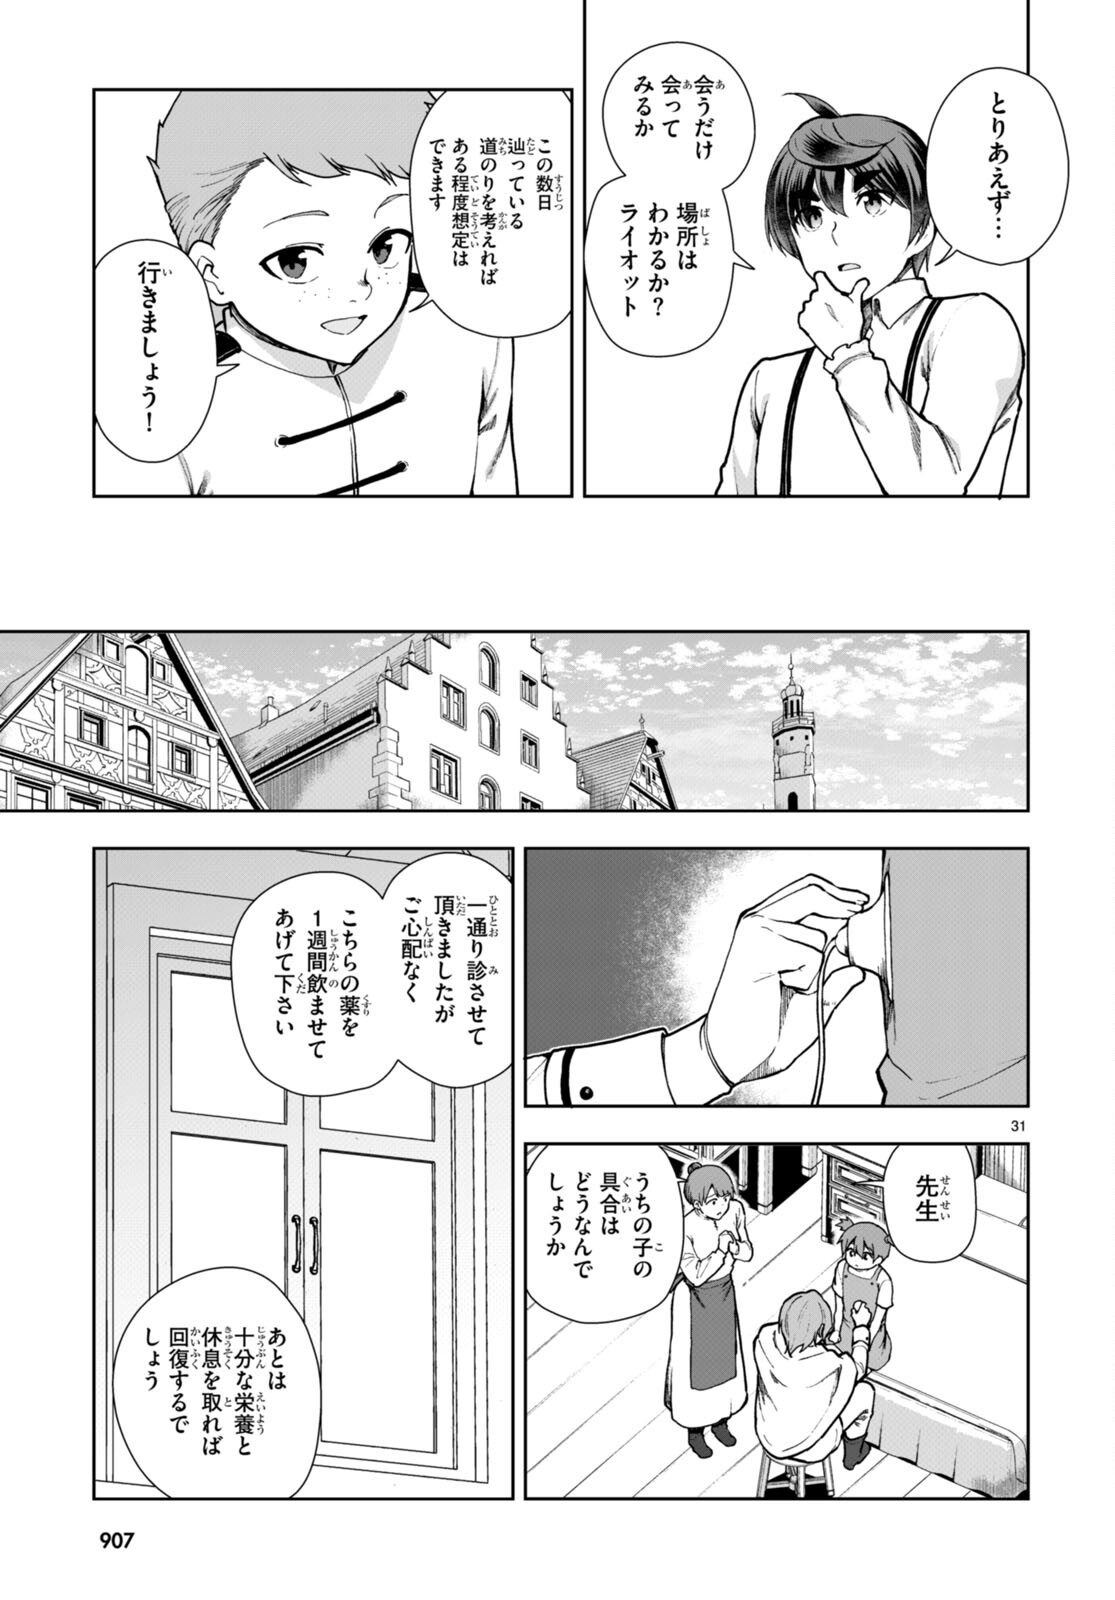 Botsuraku Youtei Nanode, Kajishokunin wo Mezasu - Chapter 81 - Page 31